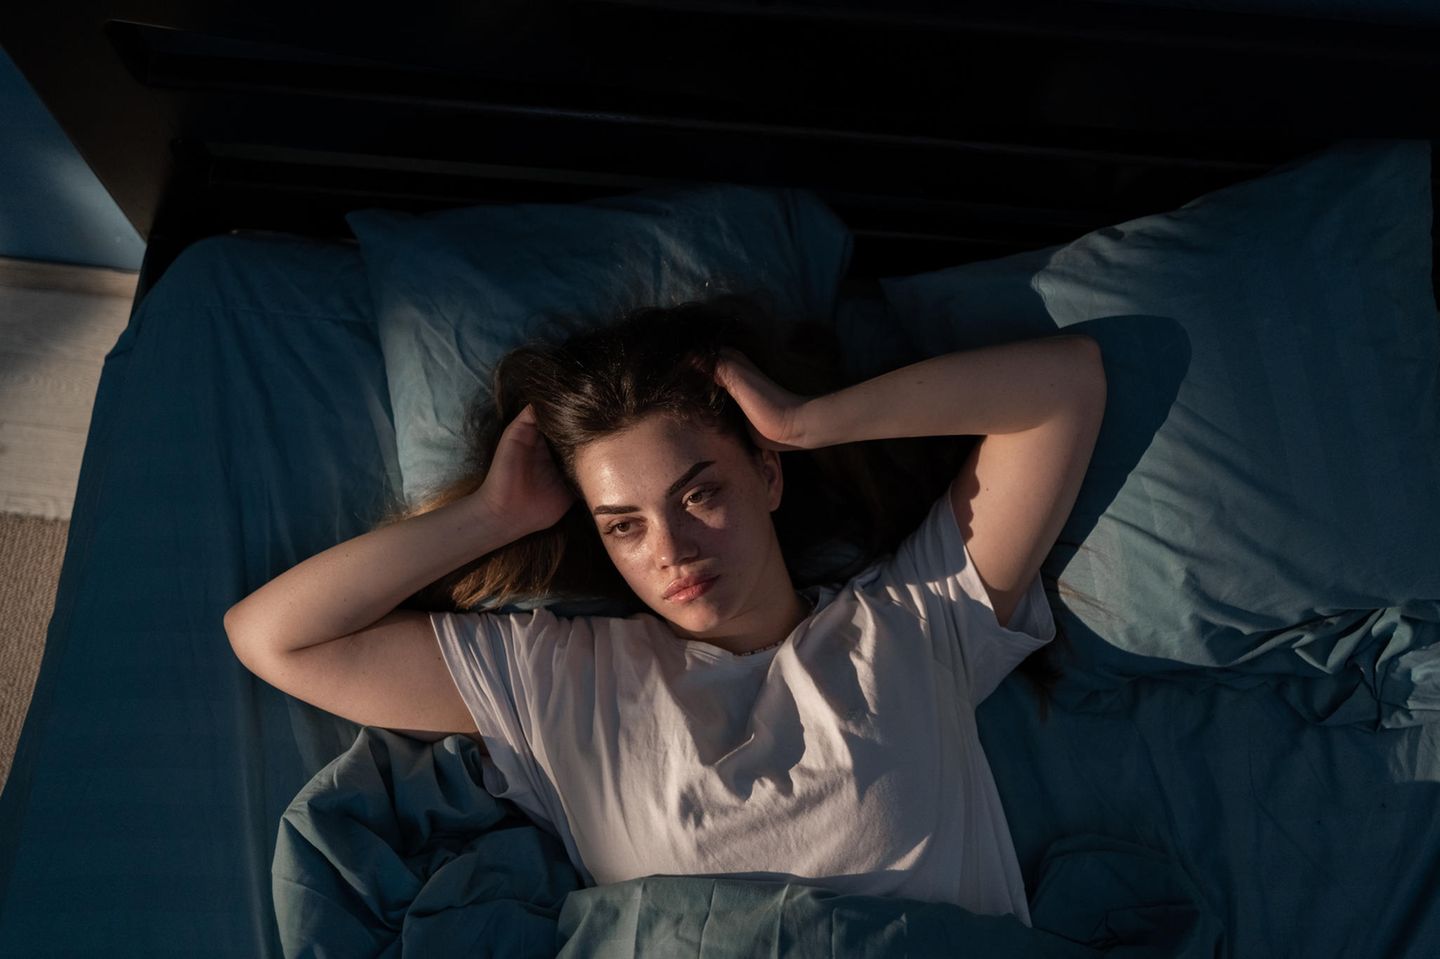 Wenn ihr eine Nacht schlecht schlaft, führt das nicht gleich zu mehr Falten. Chronischer Schlafmangel kann jedoch die Kollagenproduktion verlangsamen und die Elastizität vermindern, die Haut also früher optisch altern lassen. 